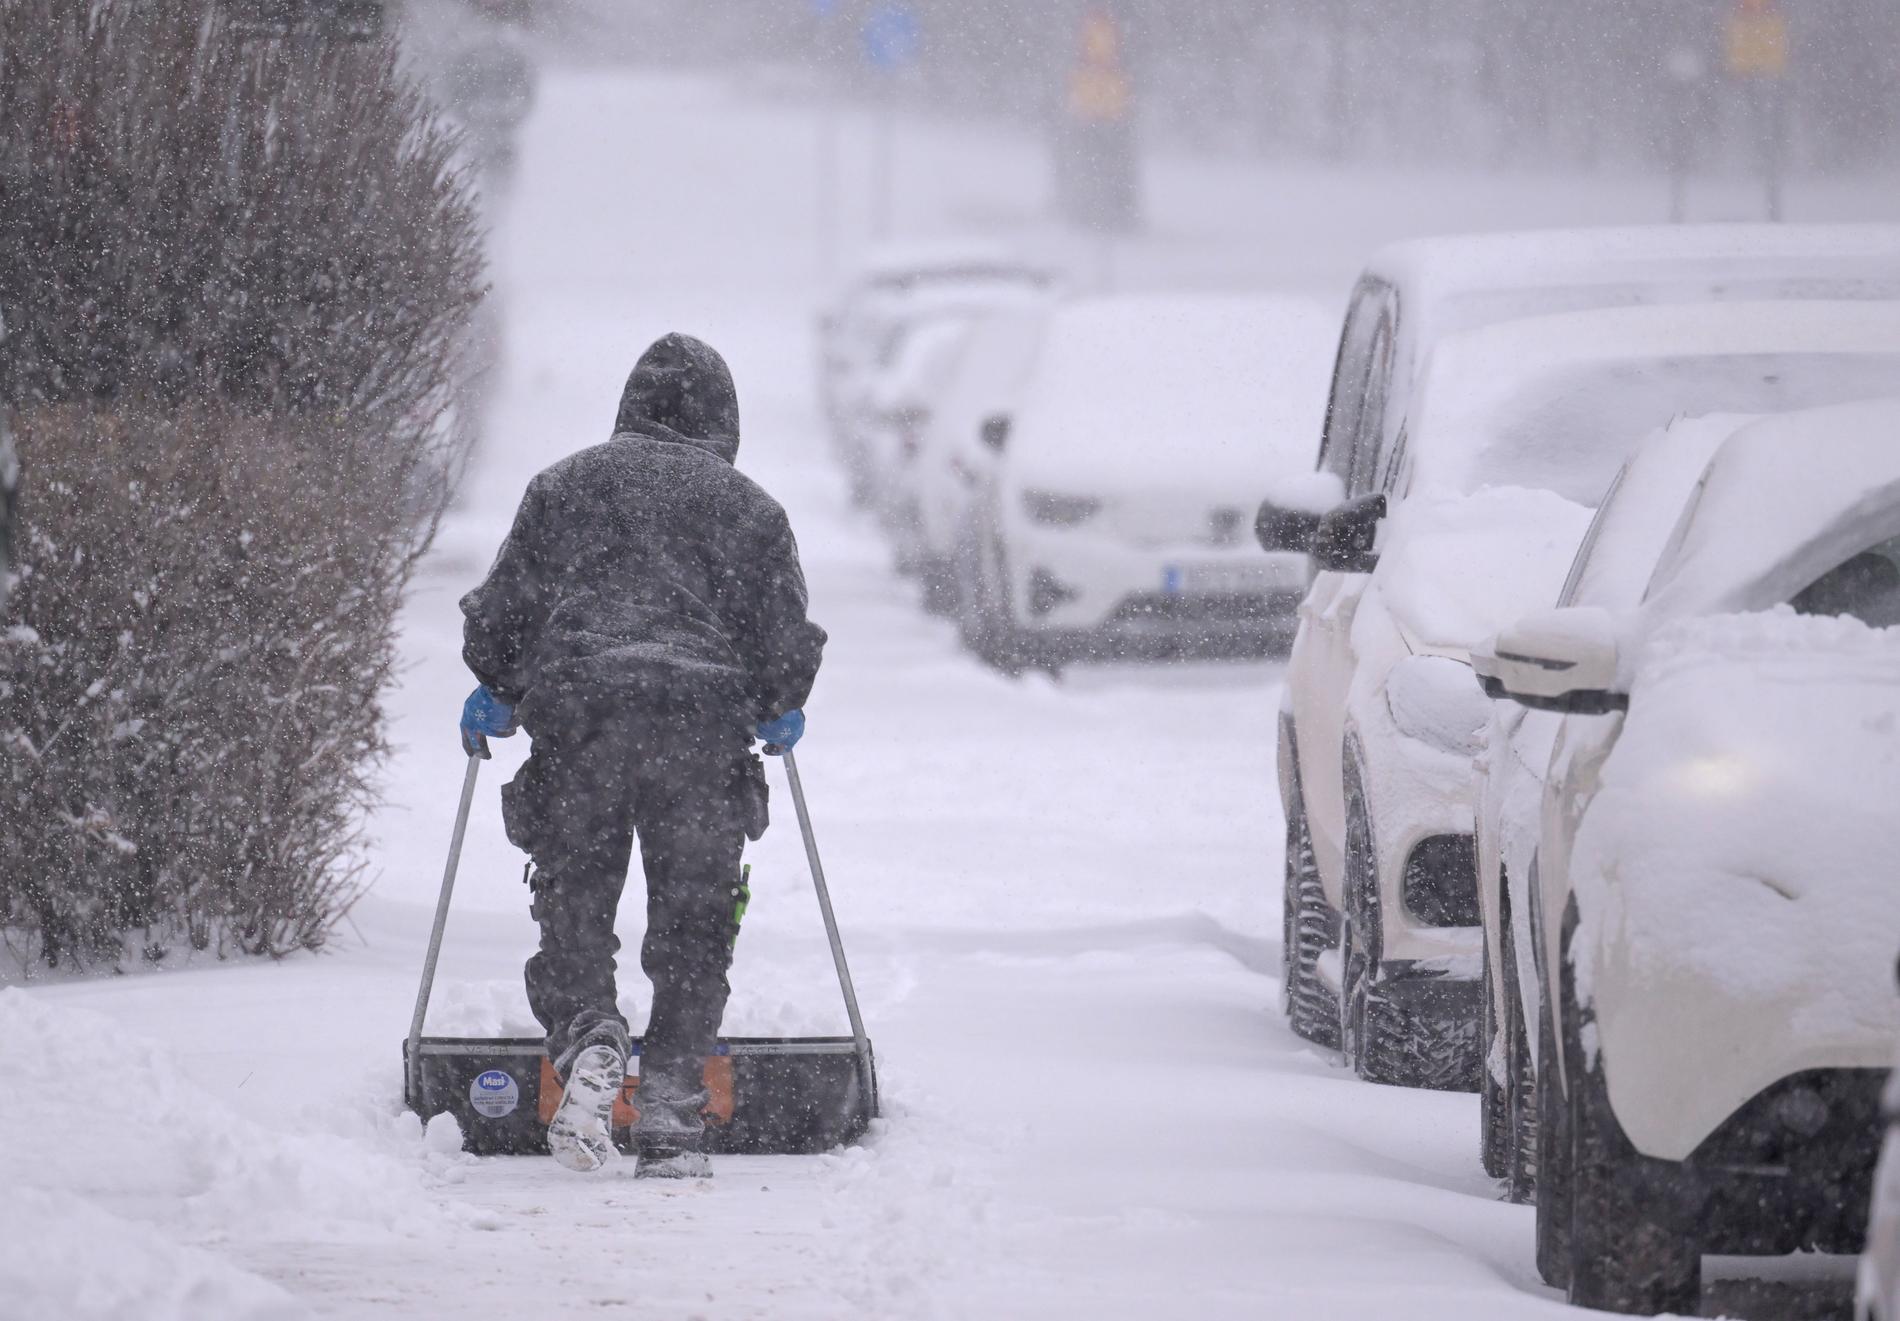 En man tar bort snö med en snöskovel på trottoaren mellan ett bostadshus och snötäckta parkerade bilar. Bild från november.